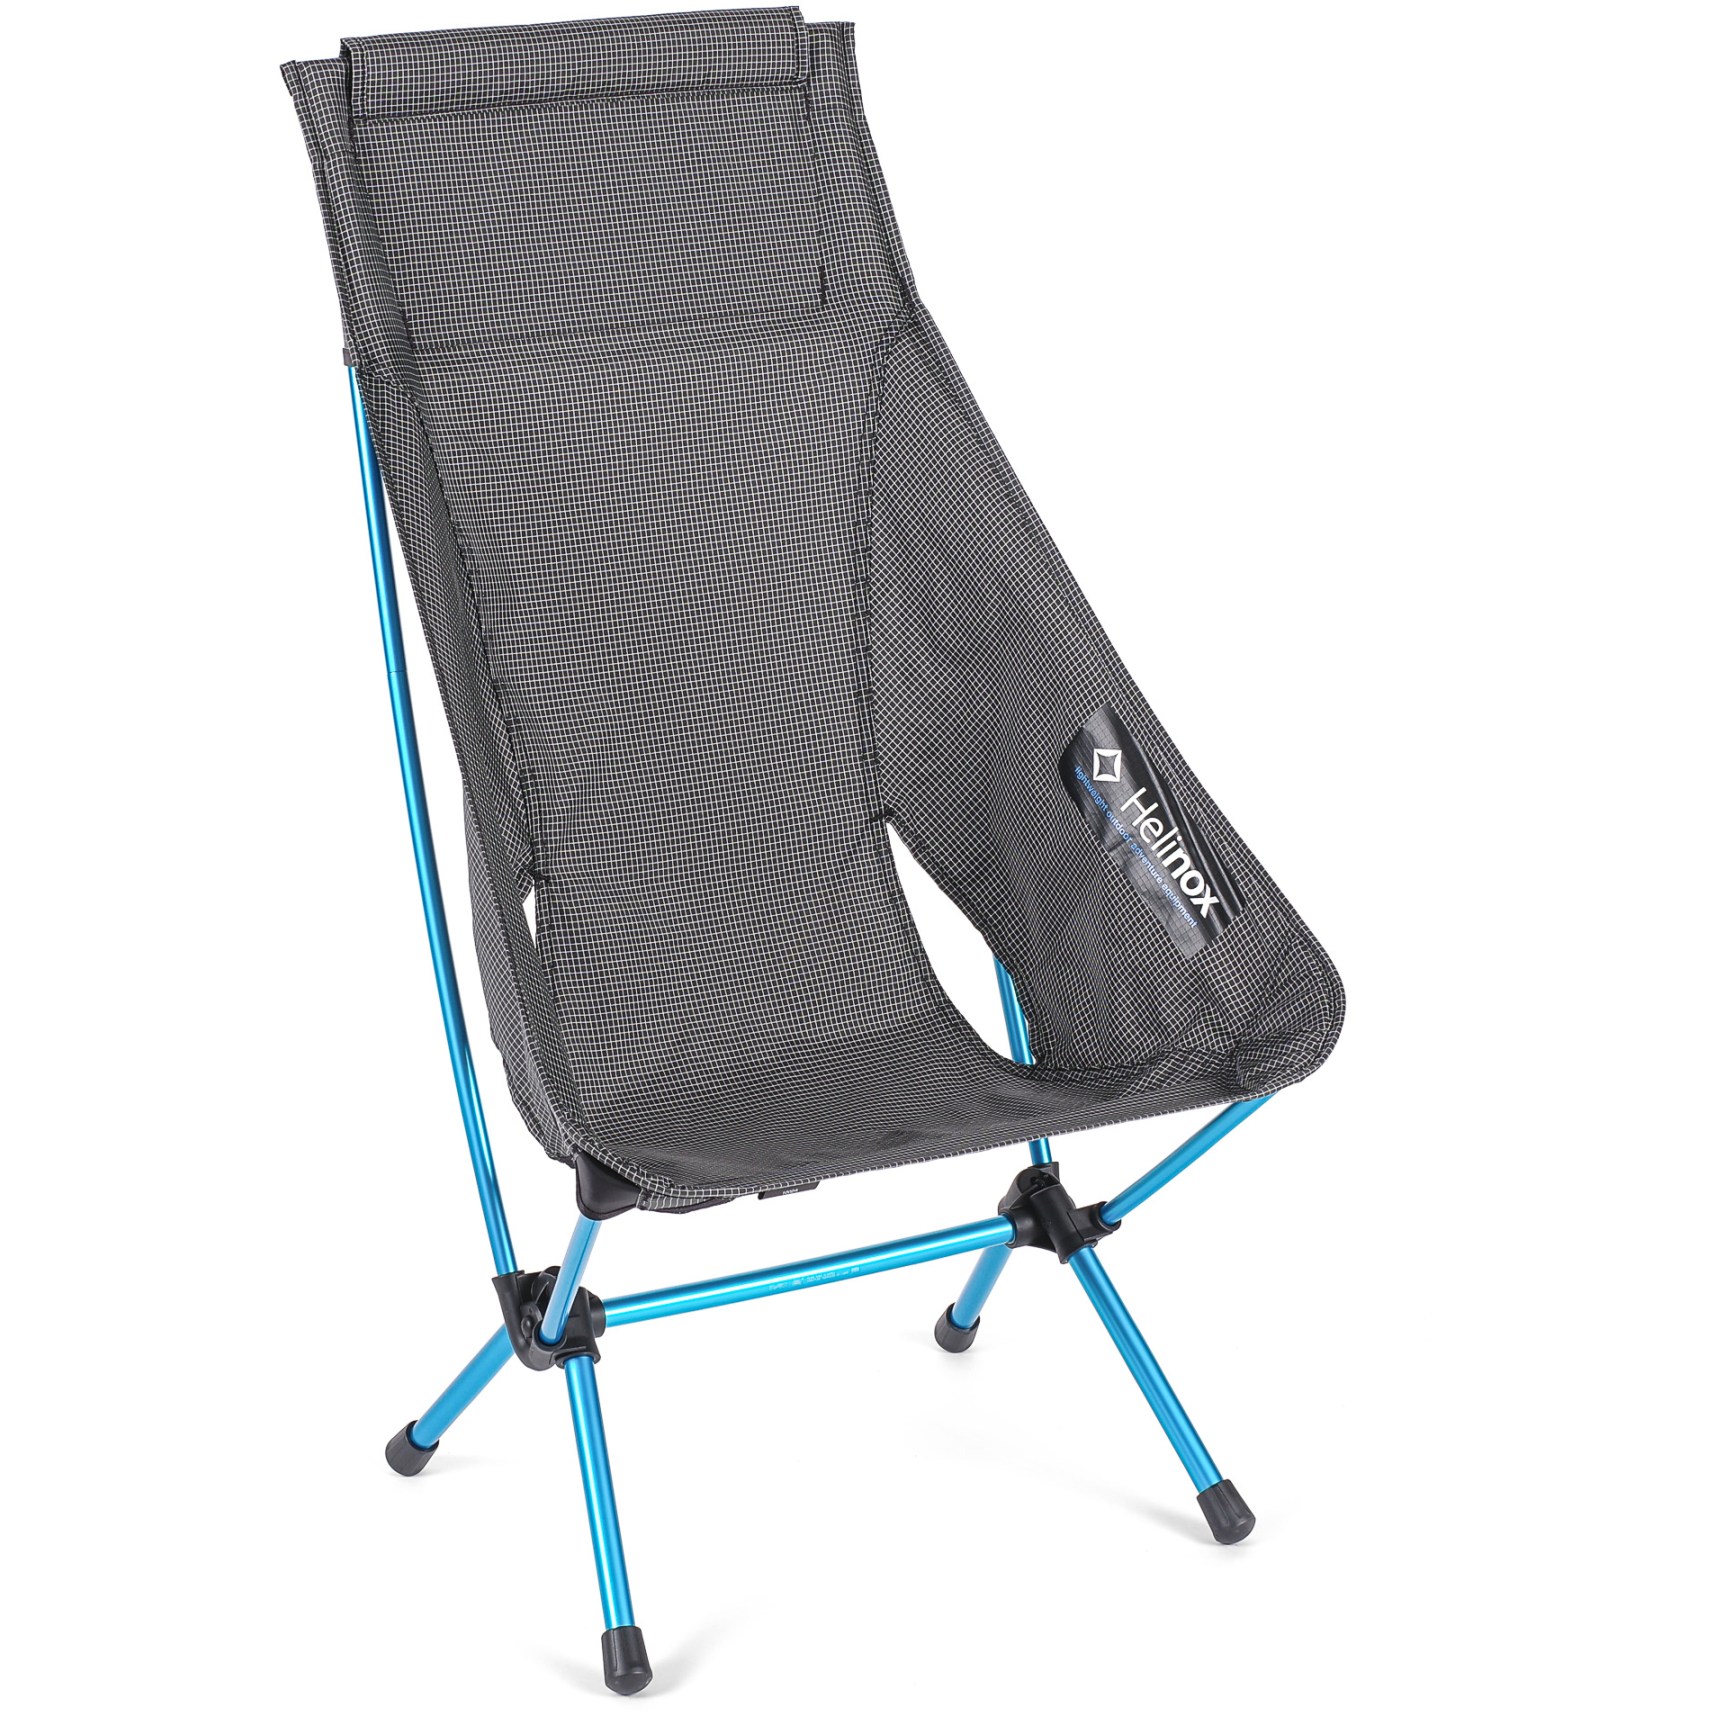 Produktbild von Helinox Chair Zero High Back Campingstuhl - schwarz - cyan blue